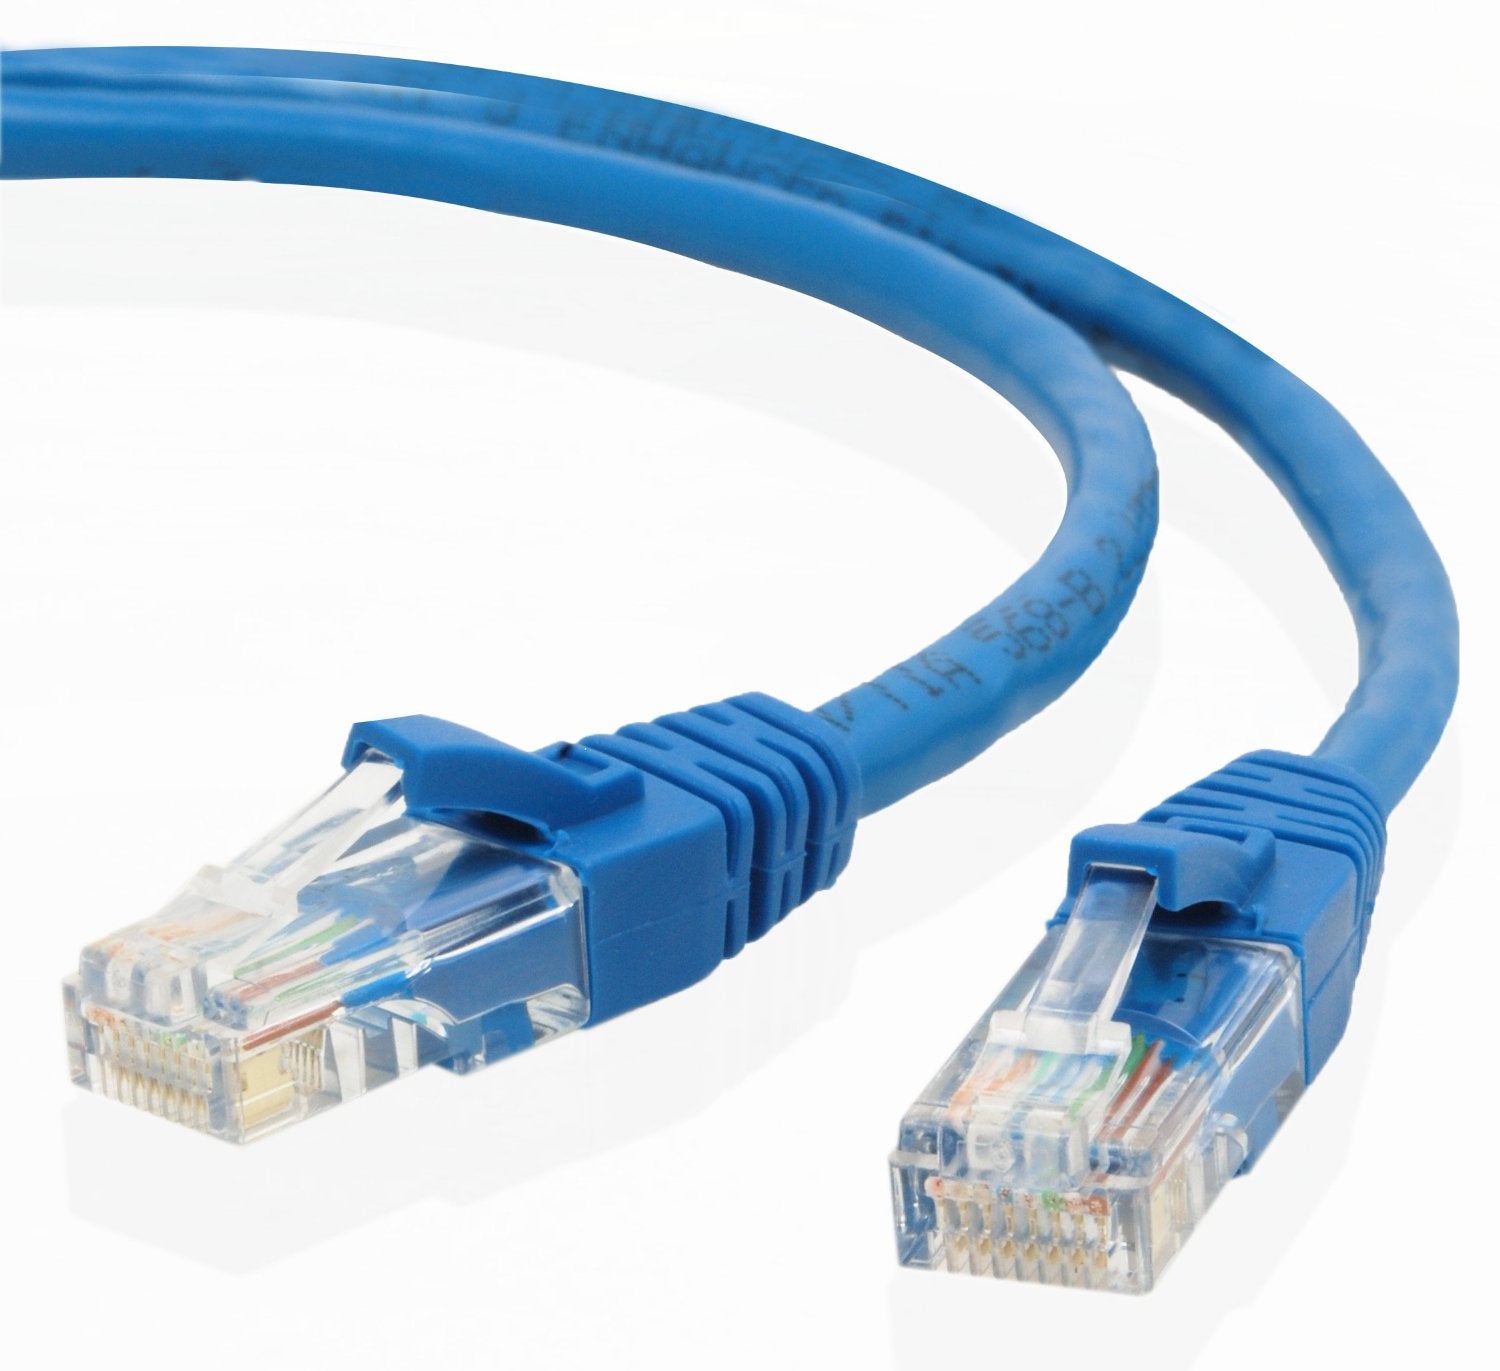 Network Cable - 15M RJ45M to RJ45M Cat5E UTP